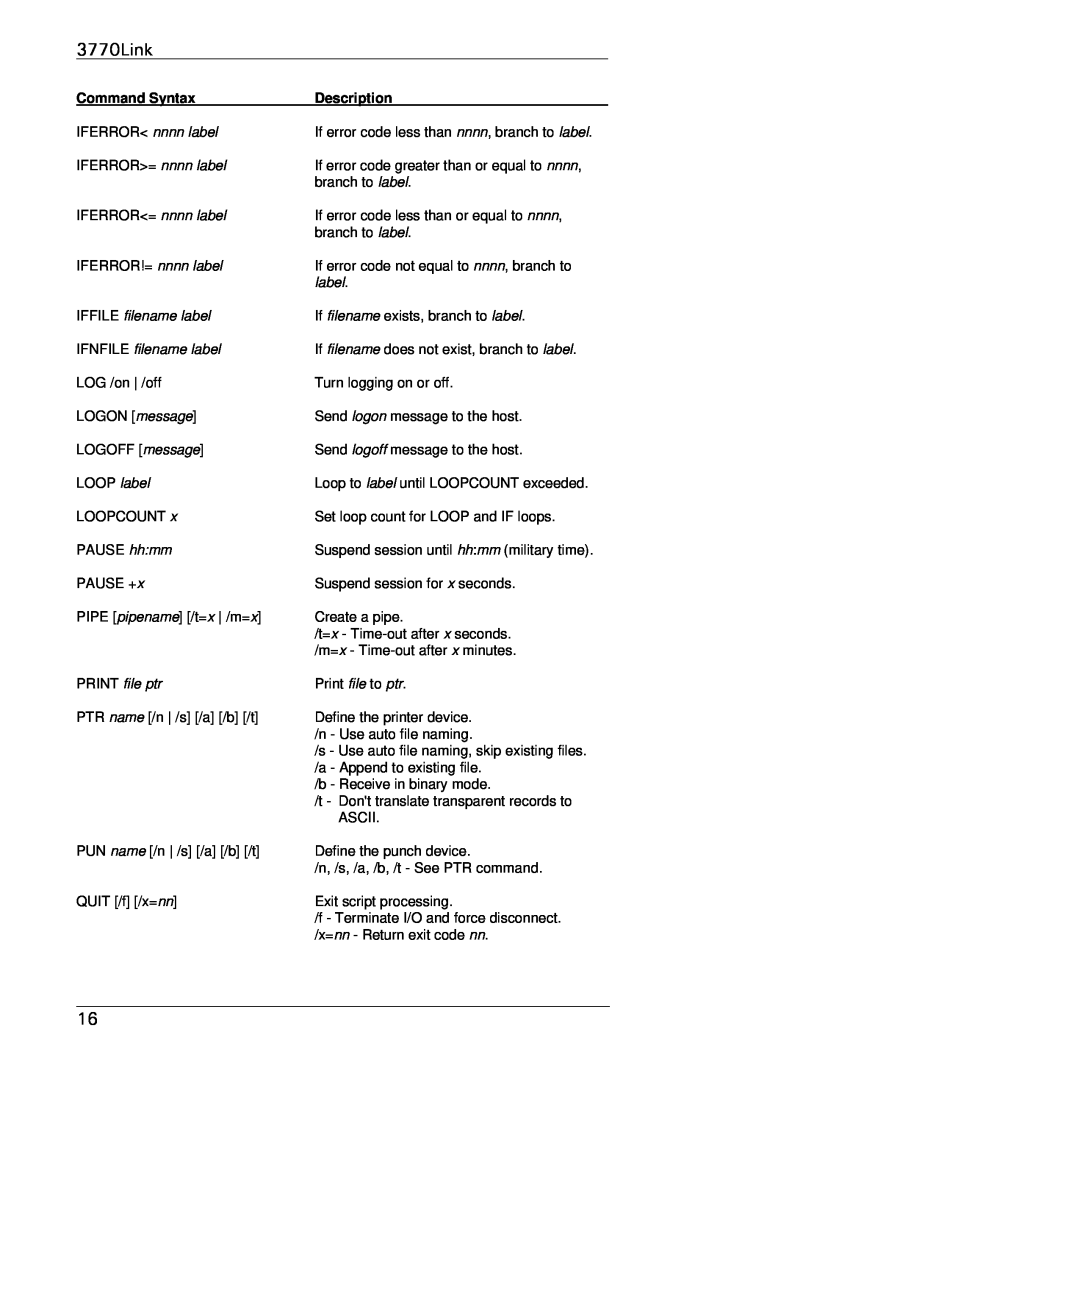 IBM manual 3770Link, IFERROR nnnn label, IFFILE filename label, IFNFILE filename label, PRINT file ptr 